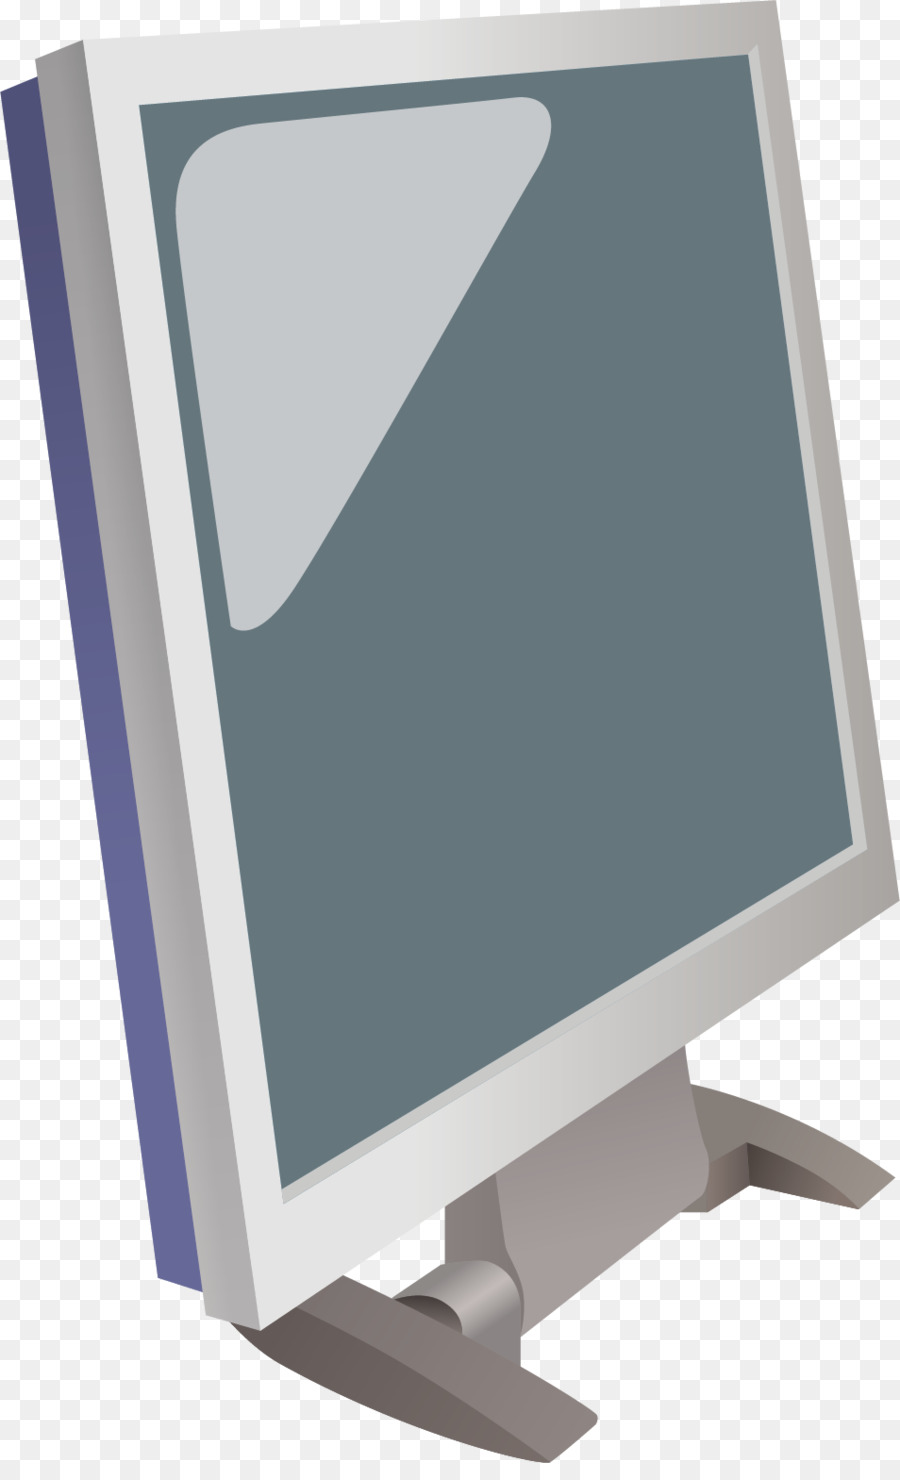 Il monitor del Computer Portatile - Computer png vettore materiale